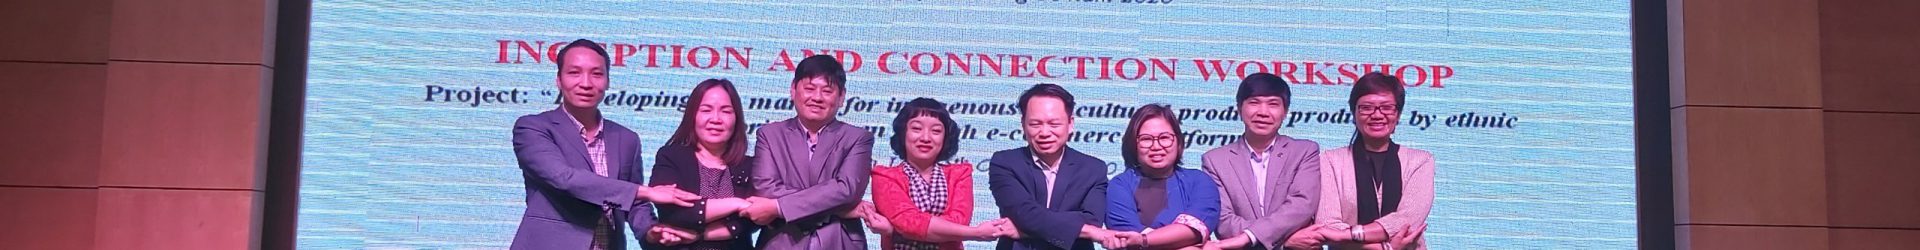 VietED tổ chức Hội thảo kết nối, Dự án i4.0 tại Sơn La